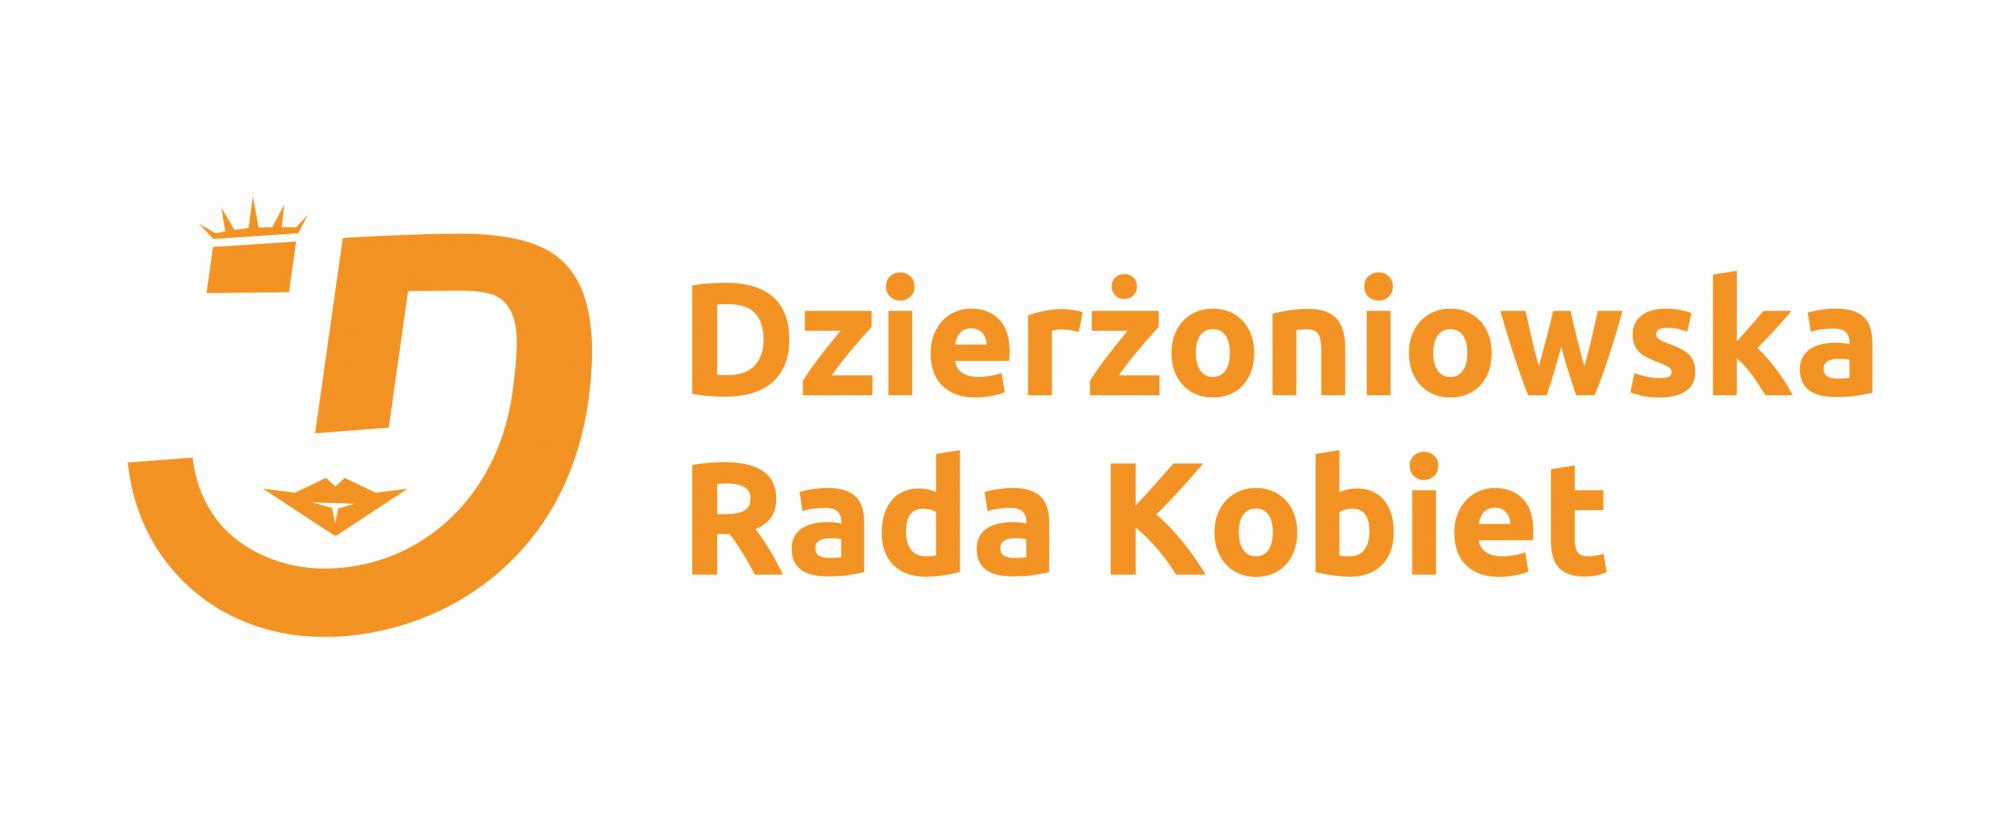 Logo Dzierżoniowskiej Rady Kobiet